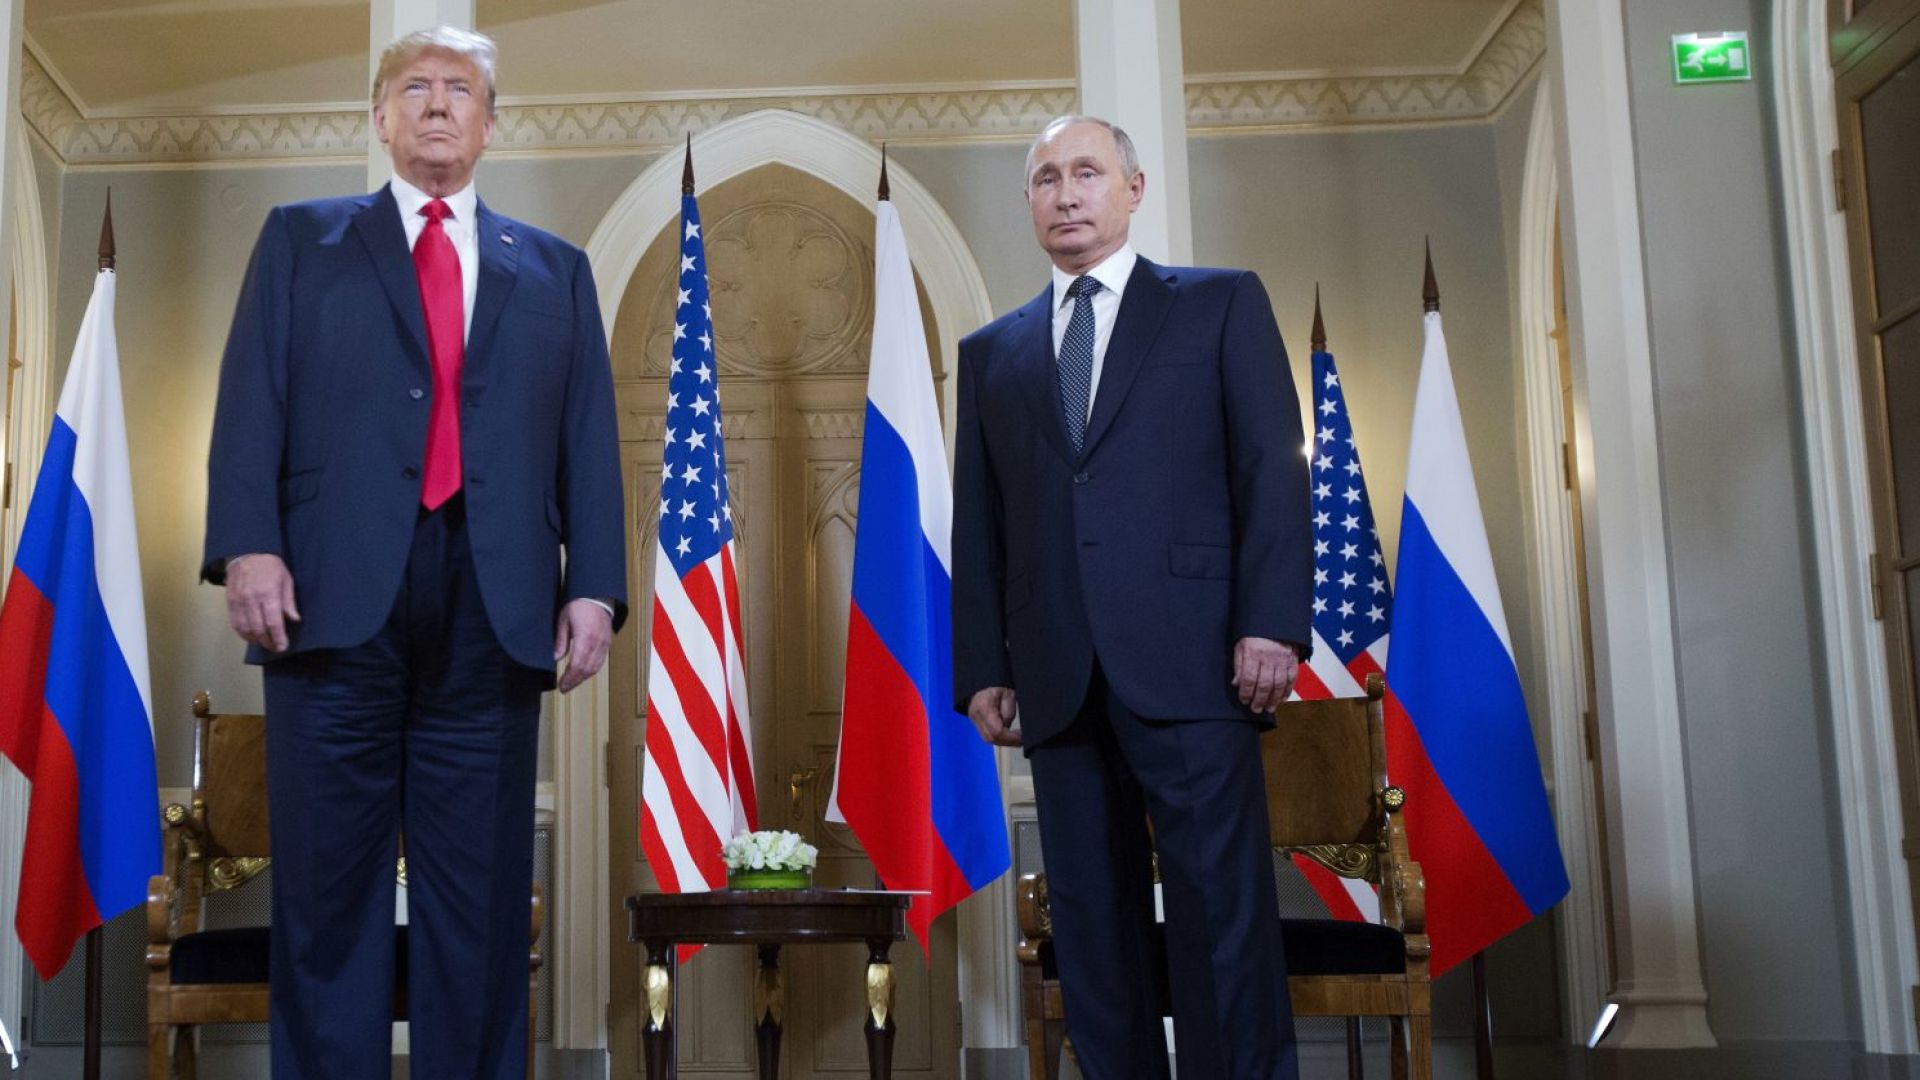 Тръмп пред Путин: Разбирателството с Русия ще е нещо добро, не лошо (обновена)